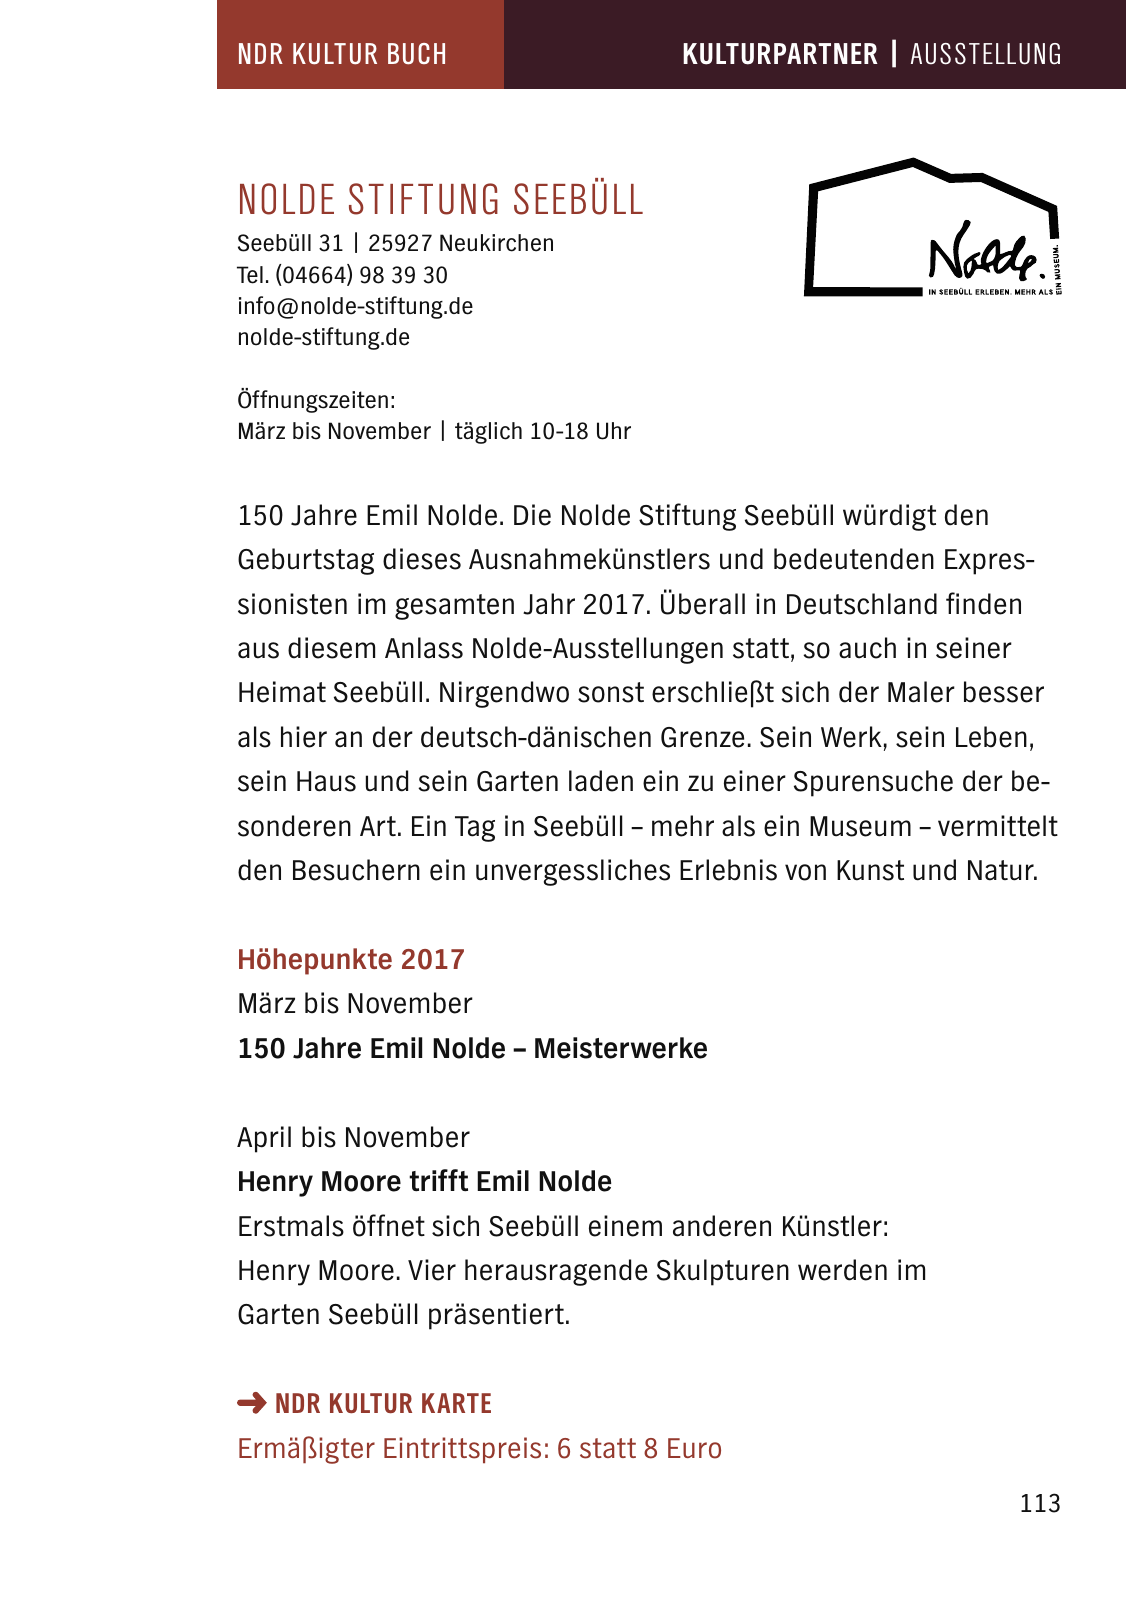 Vorschau NDR Kultur Buch 2017 Seite 115